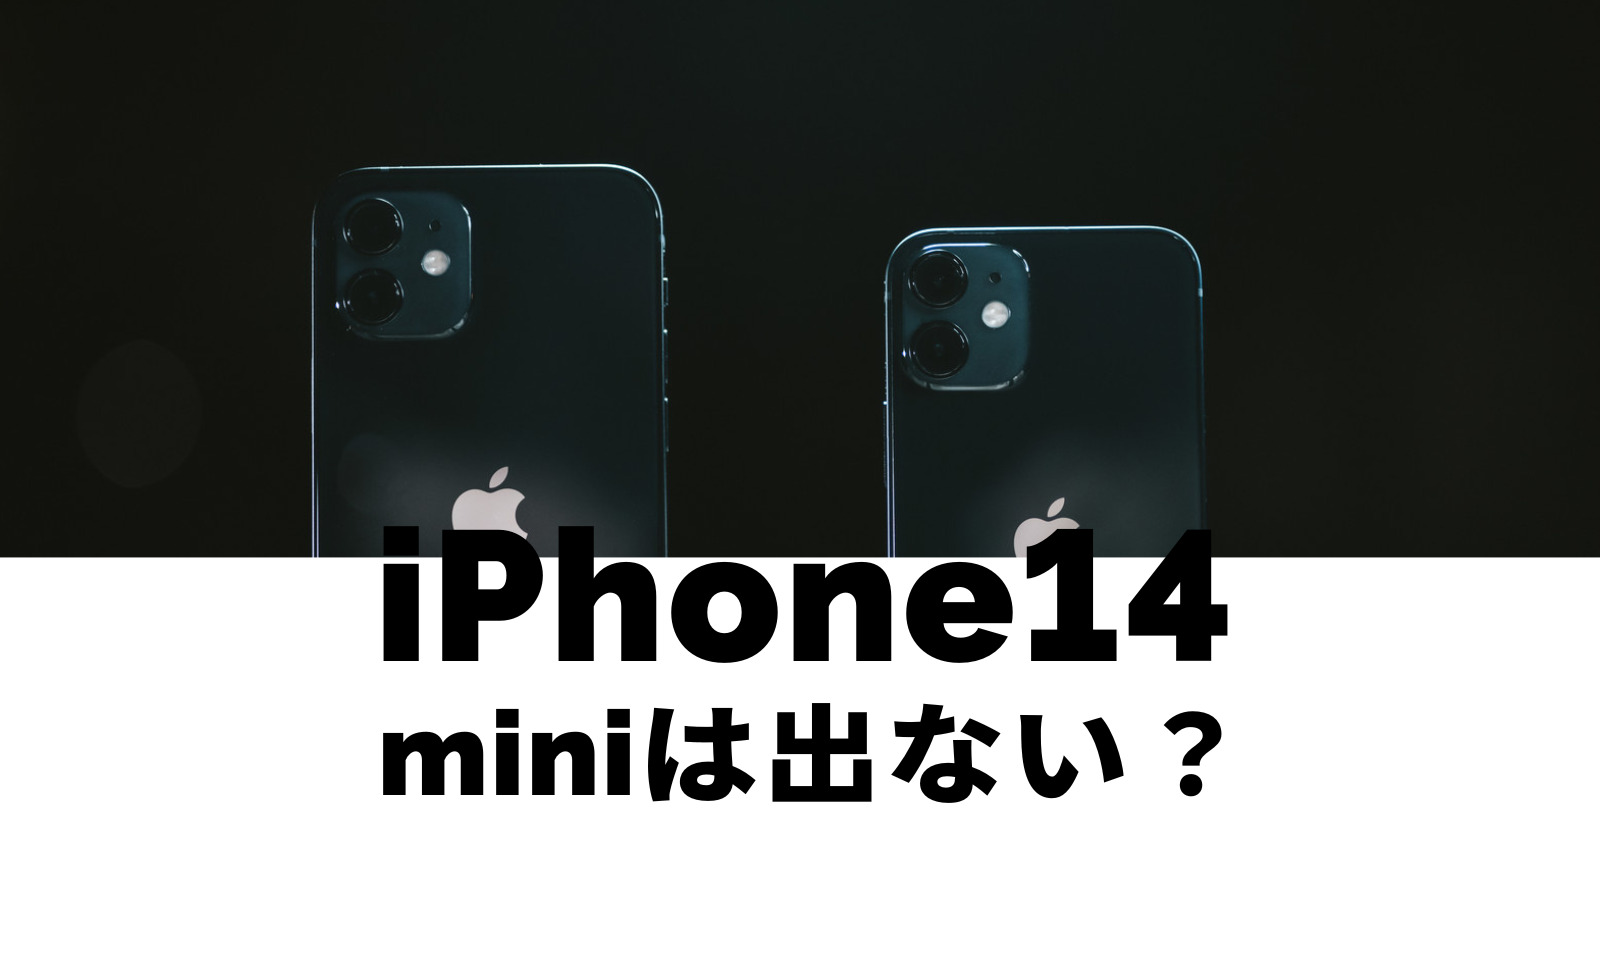 iPhone14 miniは出ない&廃止なのか解説、出る可能性は？のサムネイル画像